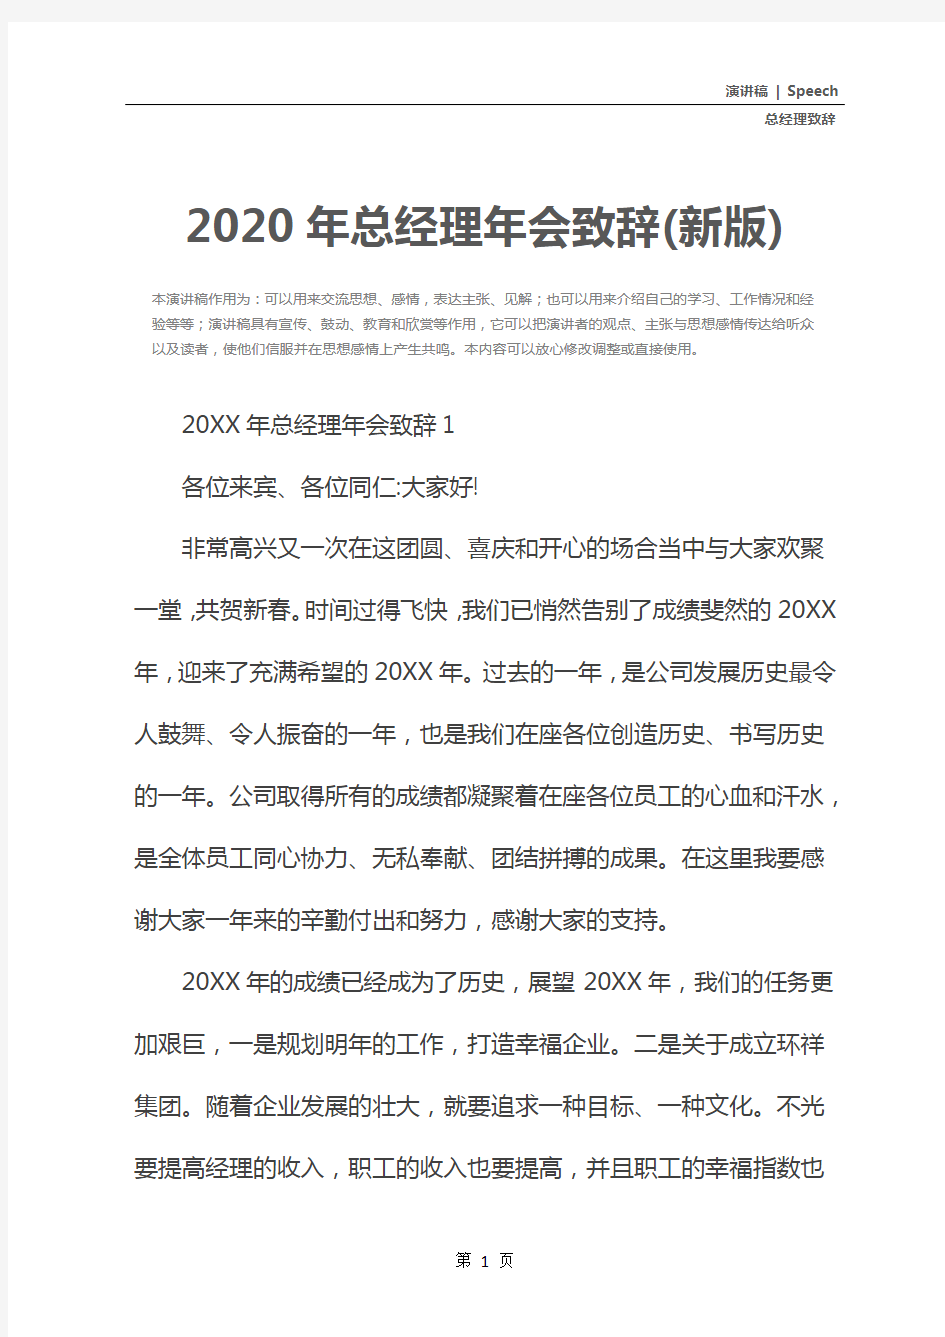 2020年总经理年会致辞(新版)